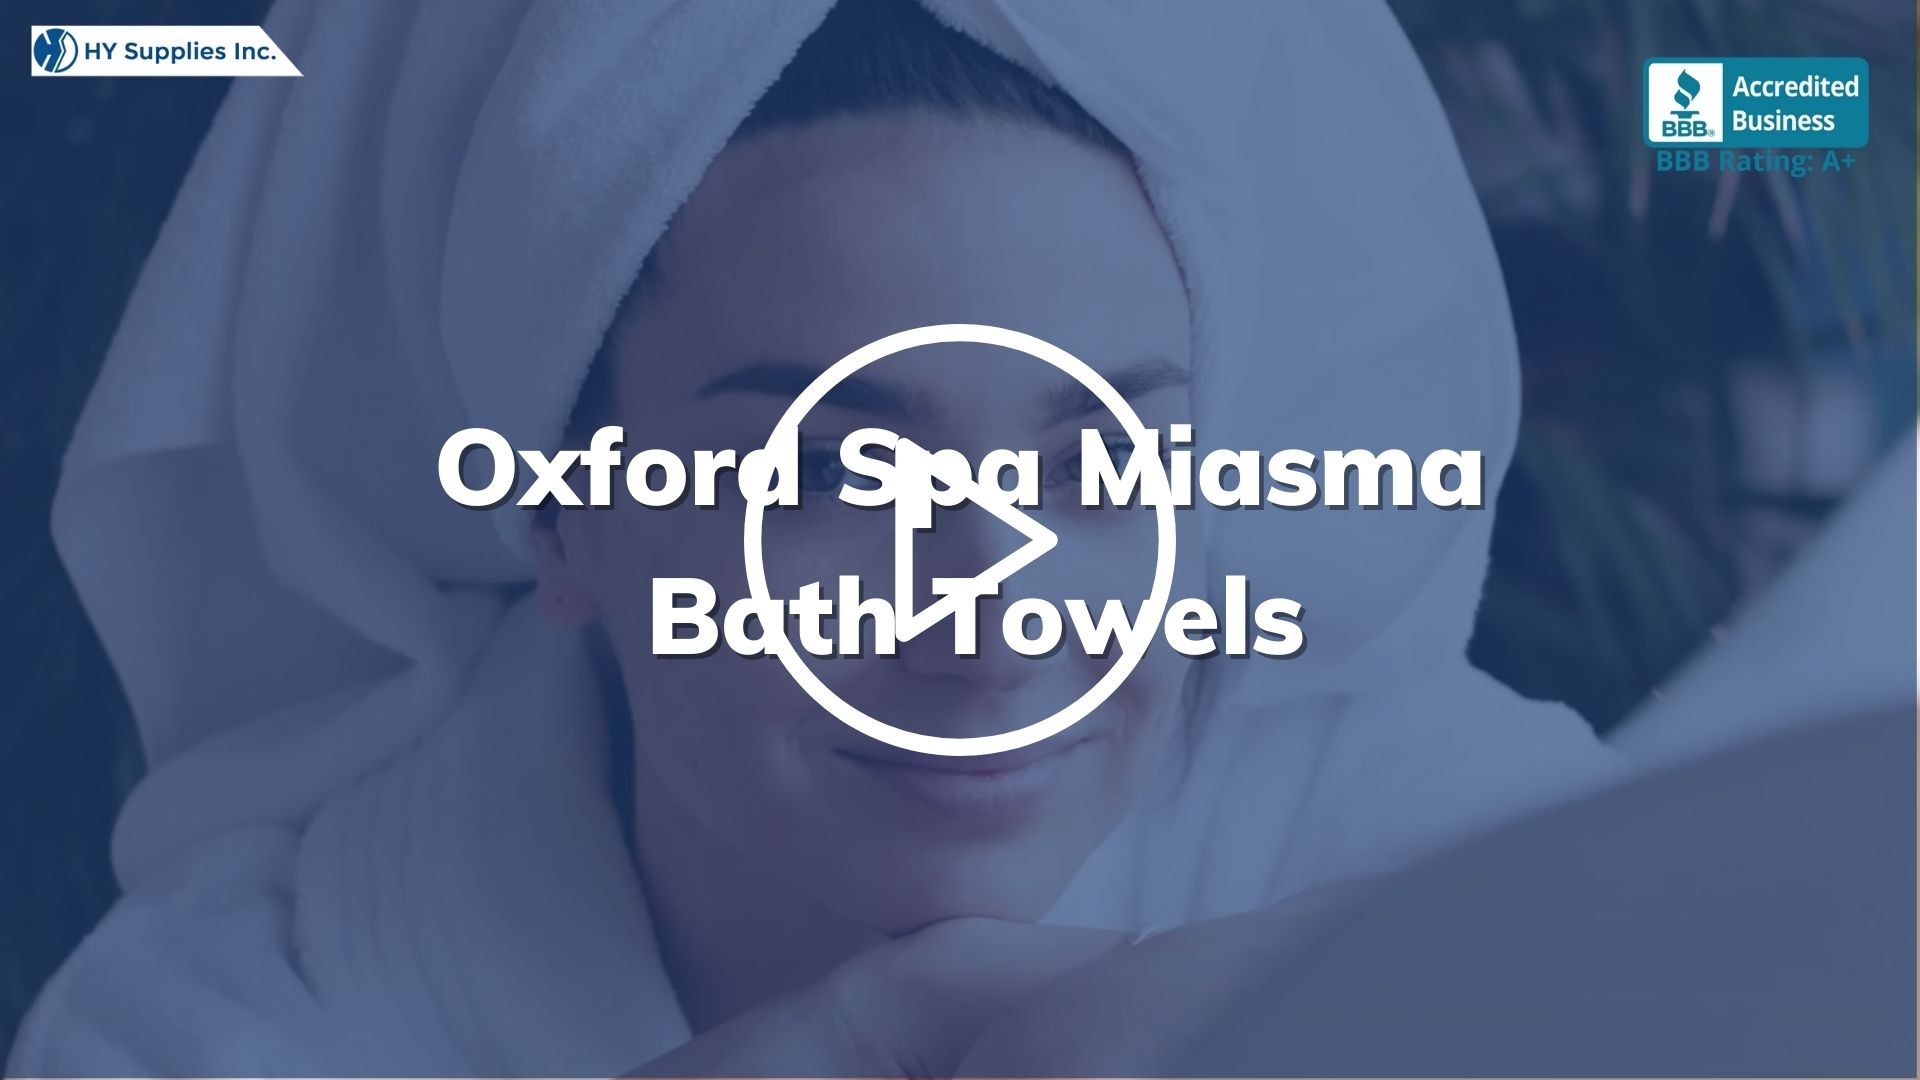 Oxford Spa Miasma Bath Towels